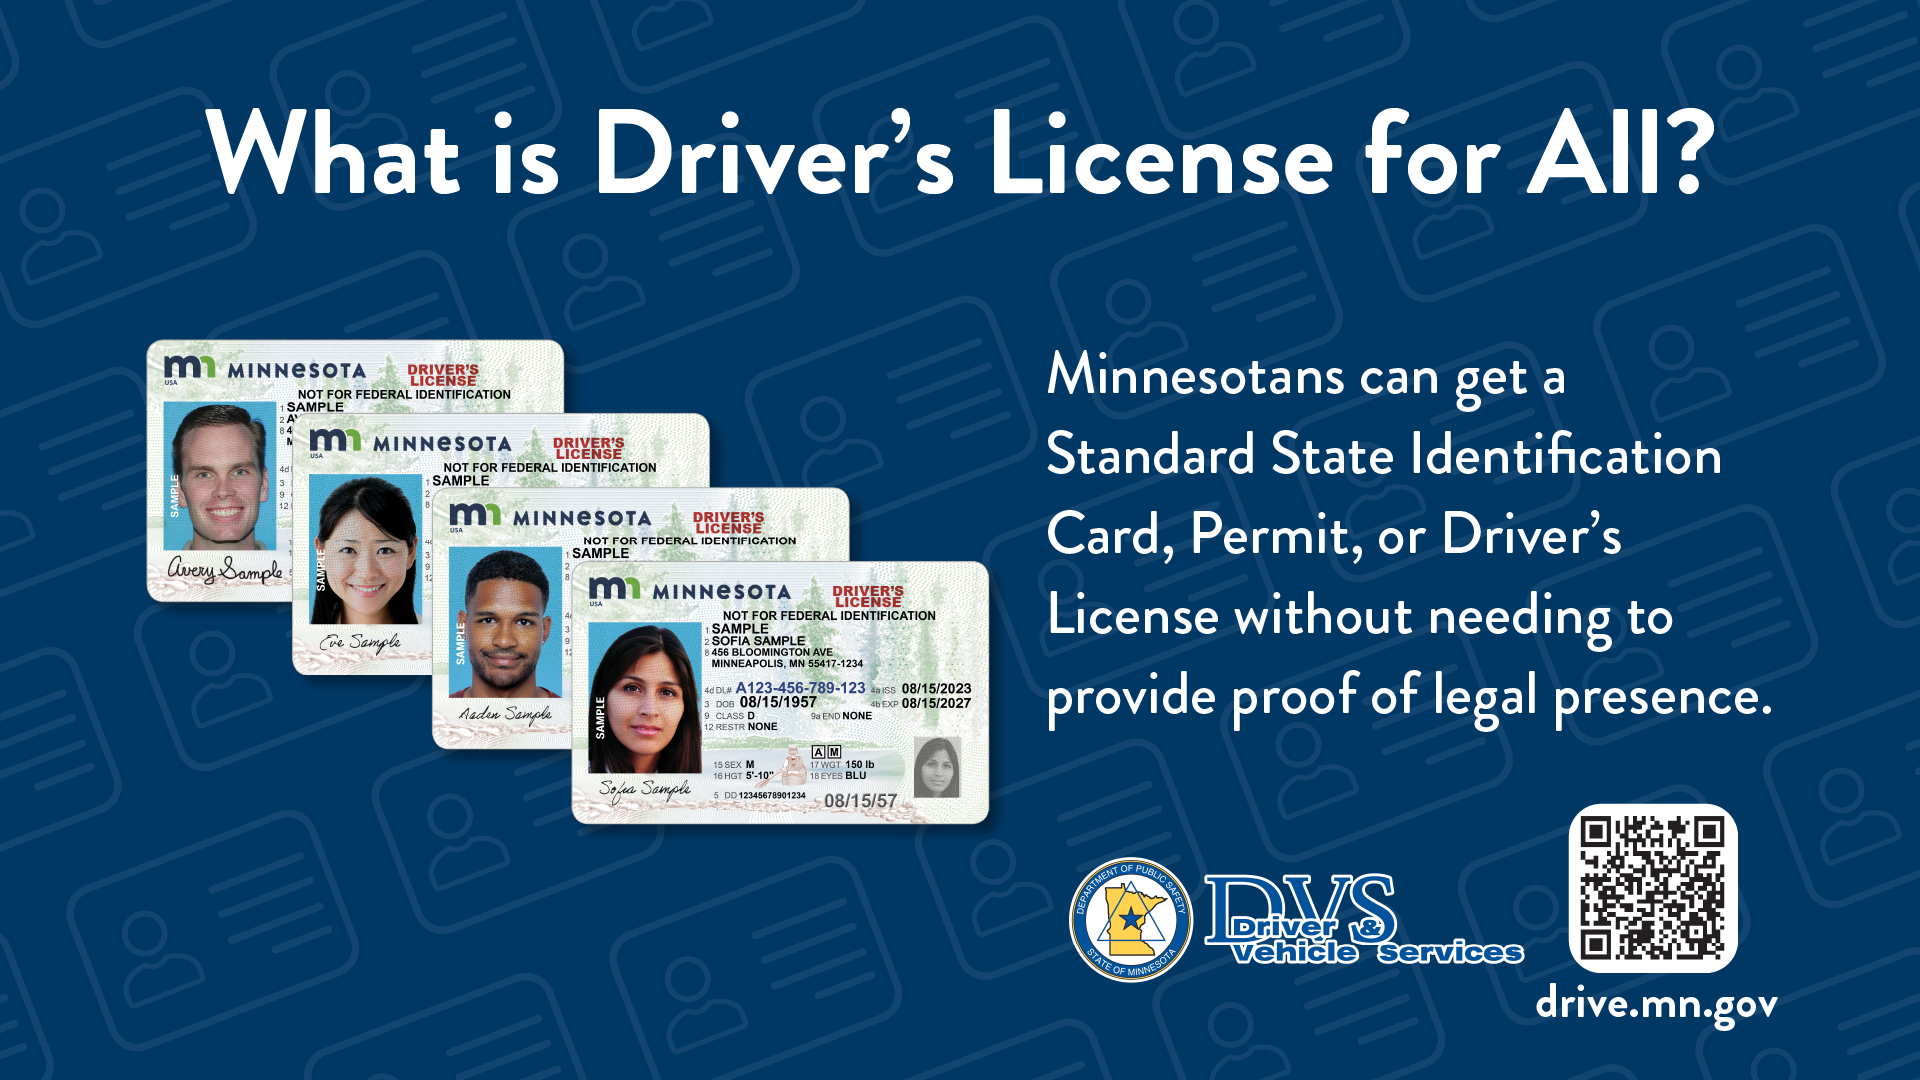 are driver's license photos public record